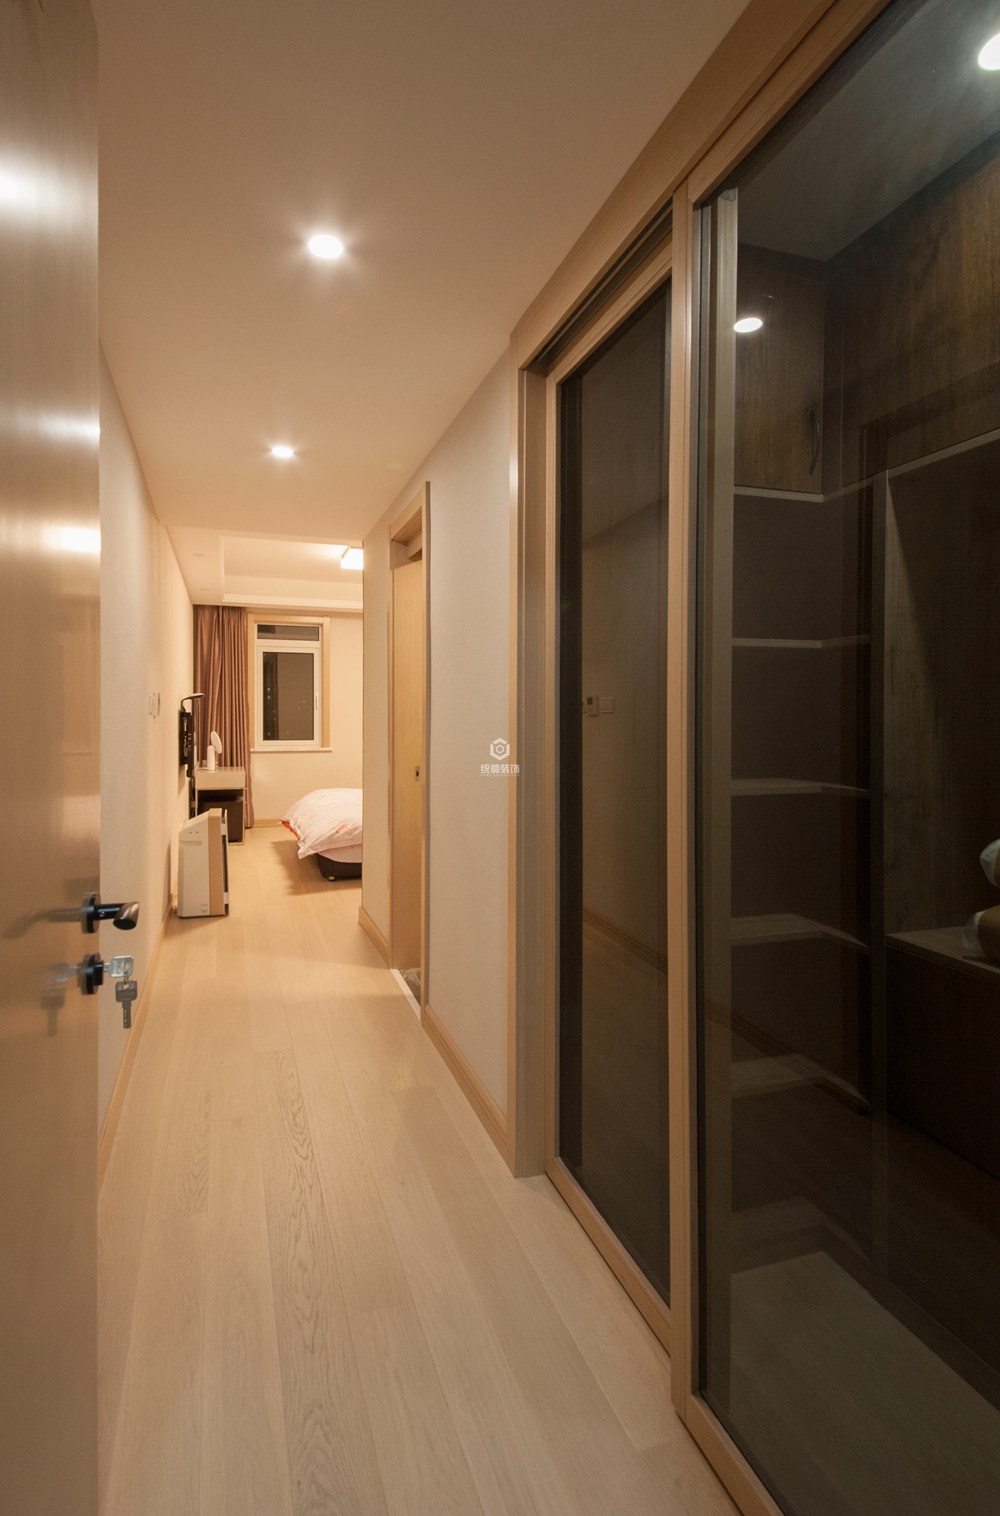 杨浦区硕和苑160平方现代简约风格三室两厅走廊装修效果图